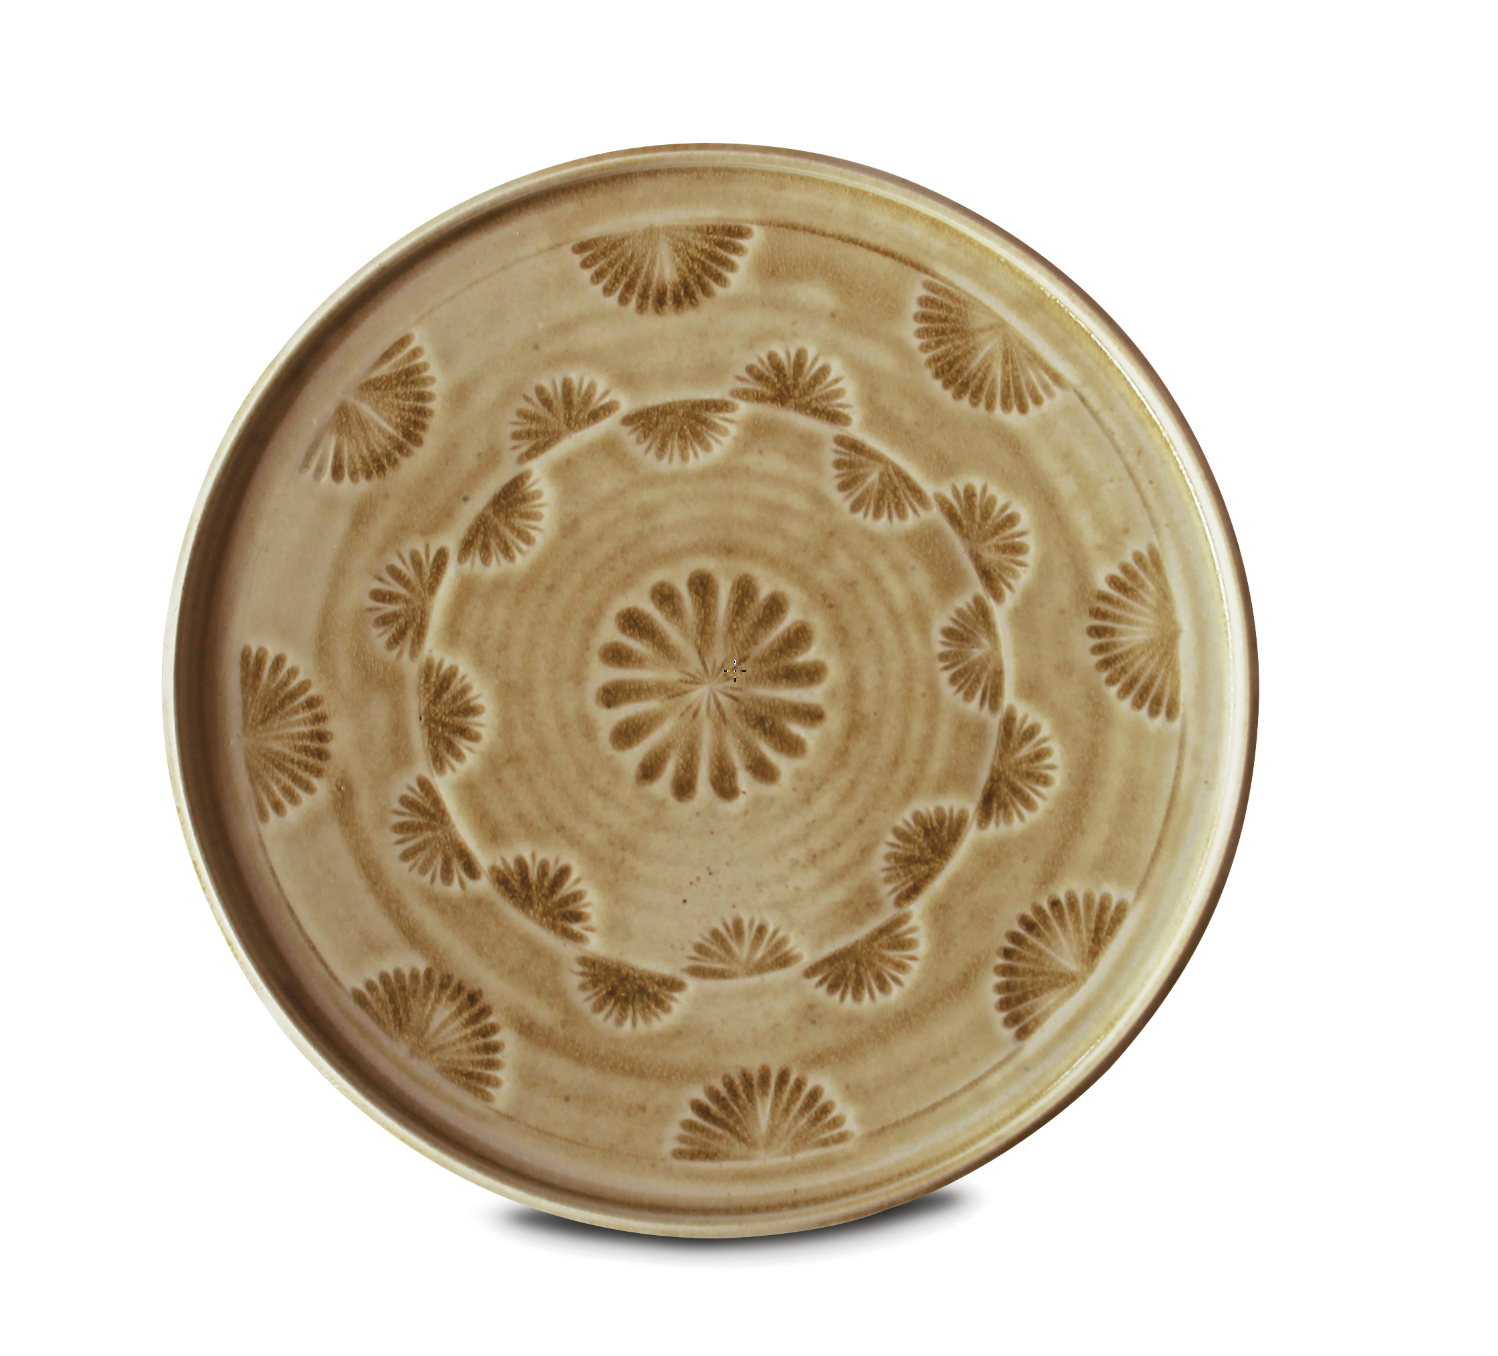 6 Kiku plate, 11¾ in. (30 cm) in diameter, white stoneware, pine-ash glaze, 2018.